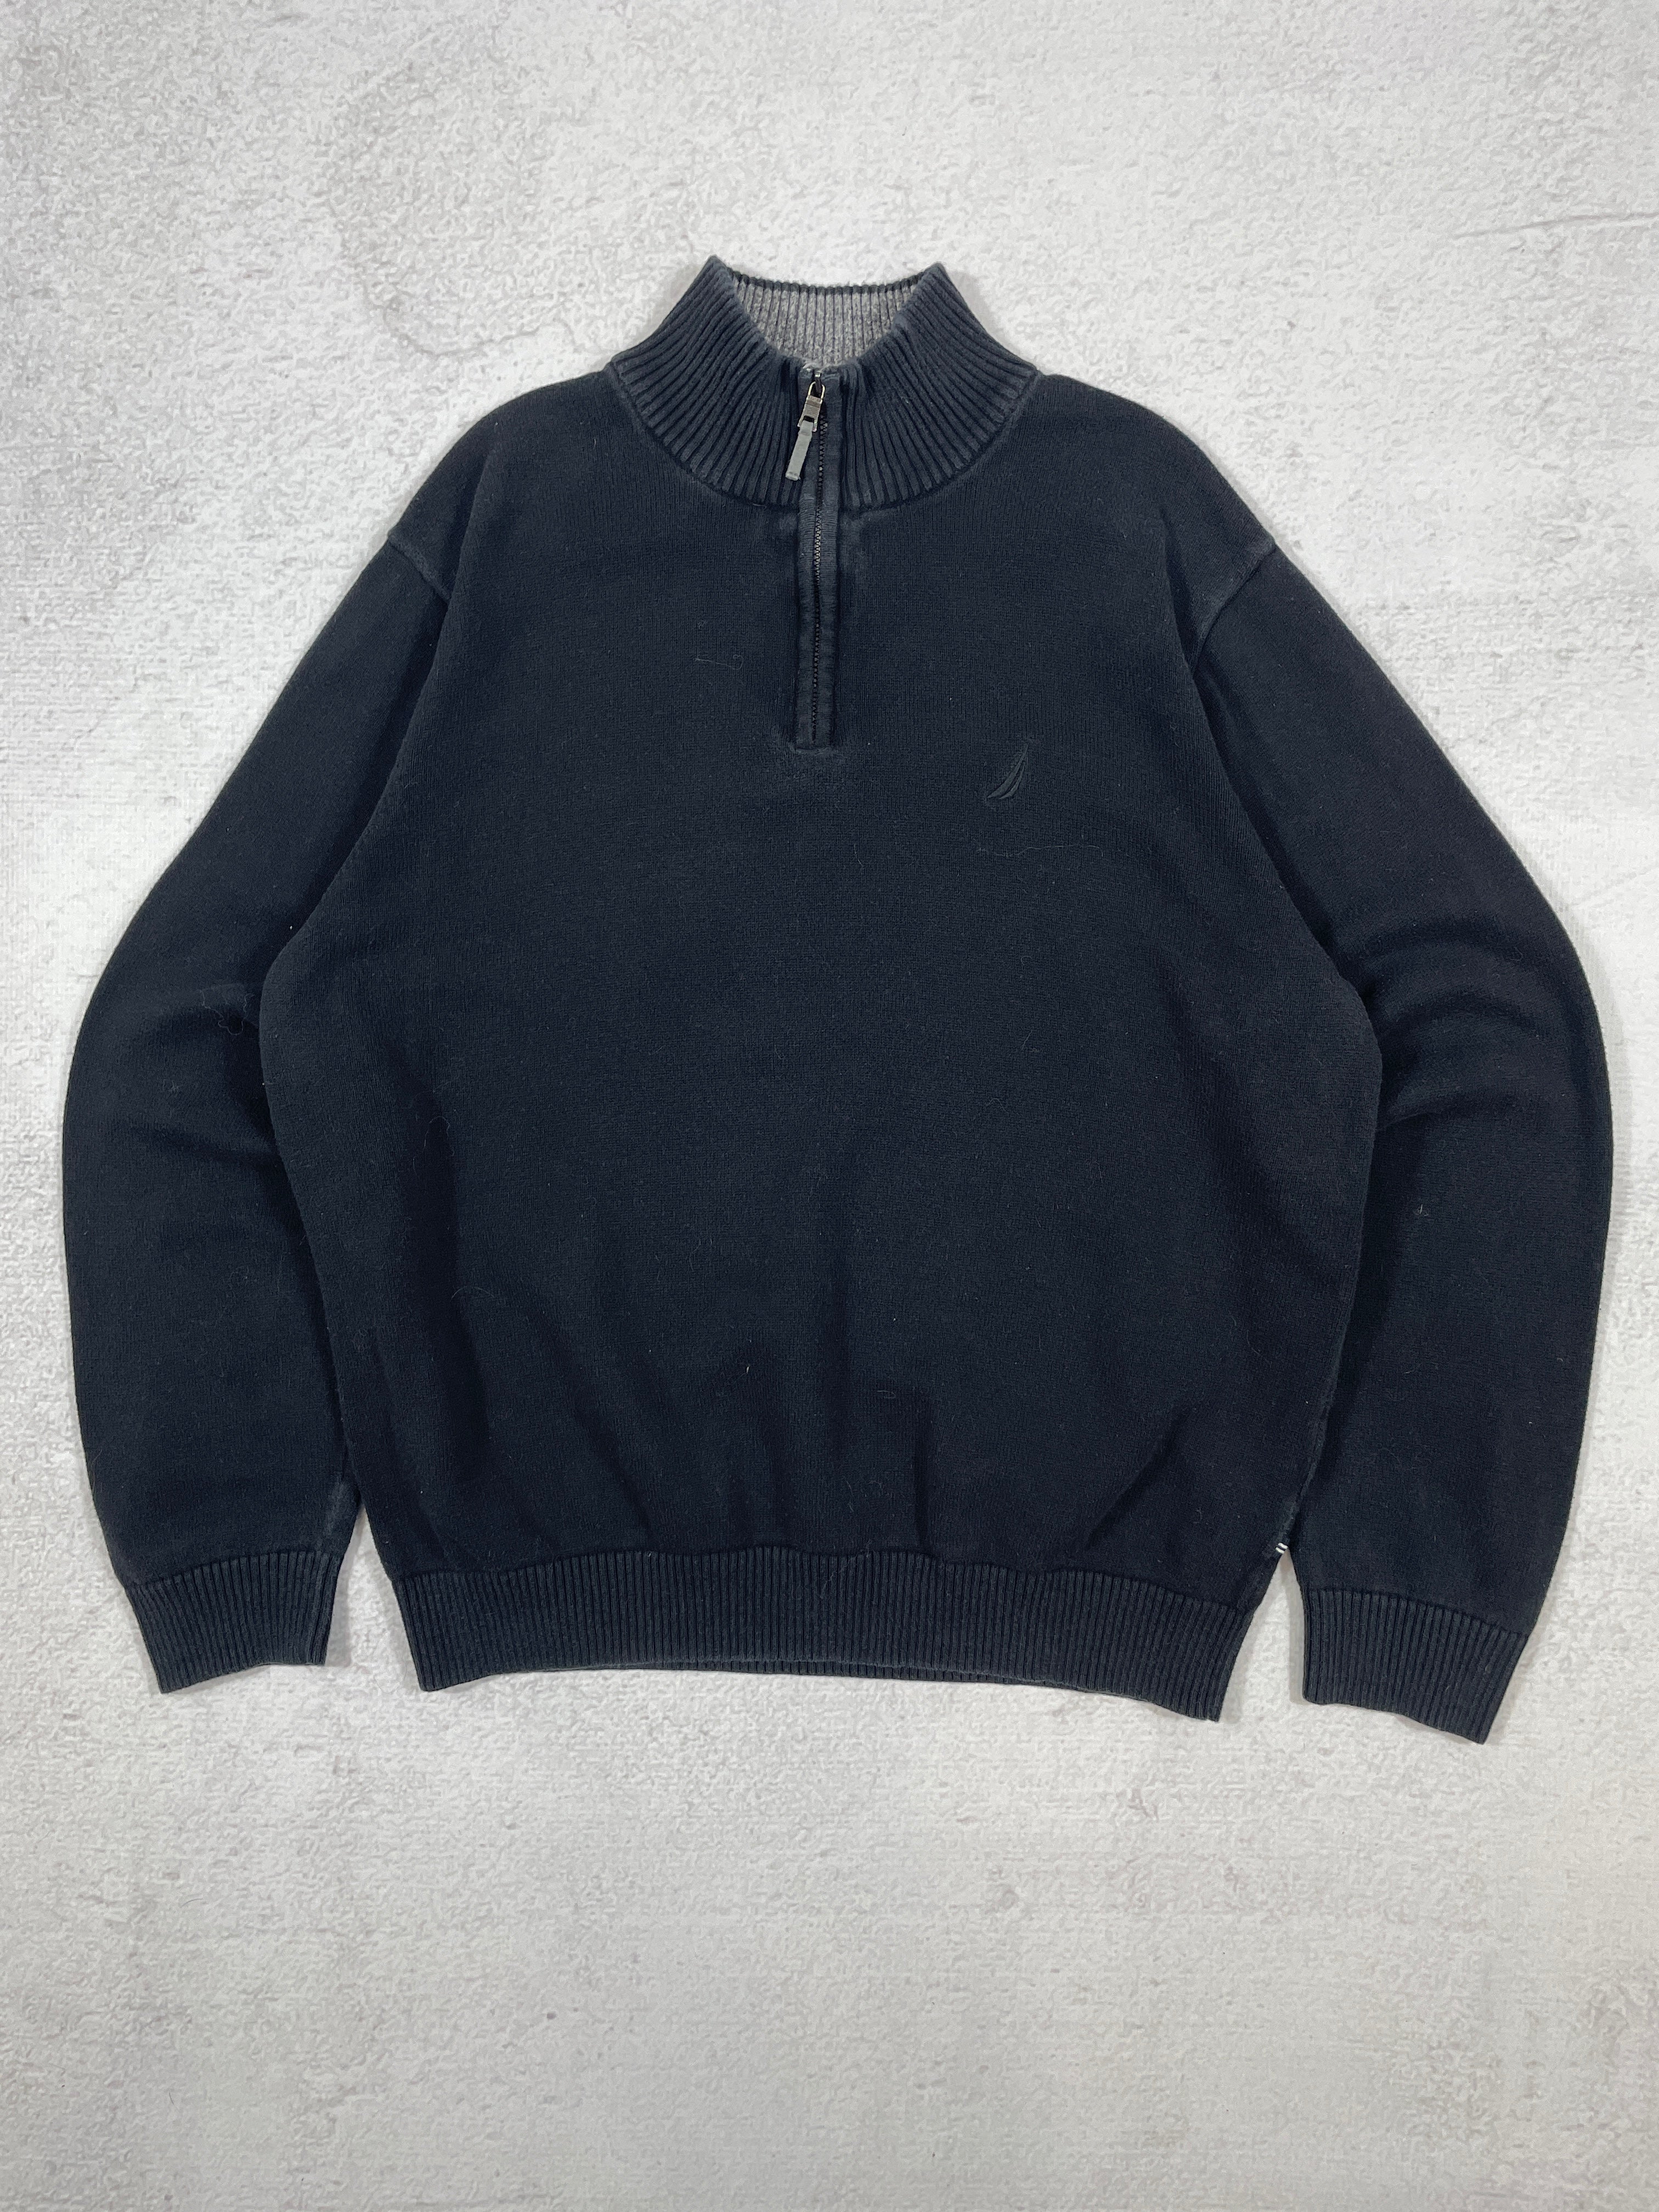 Vintage Nautica 1/4 Zip Sweatshirt - Men's Large